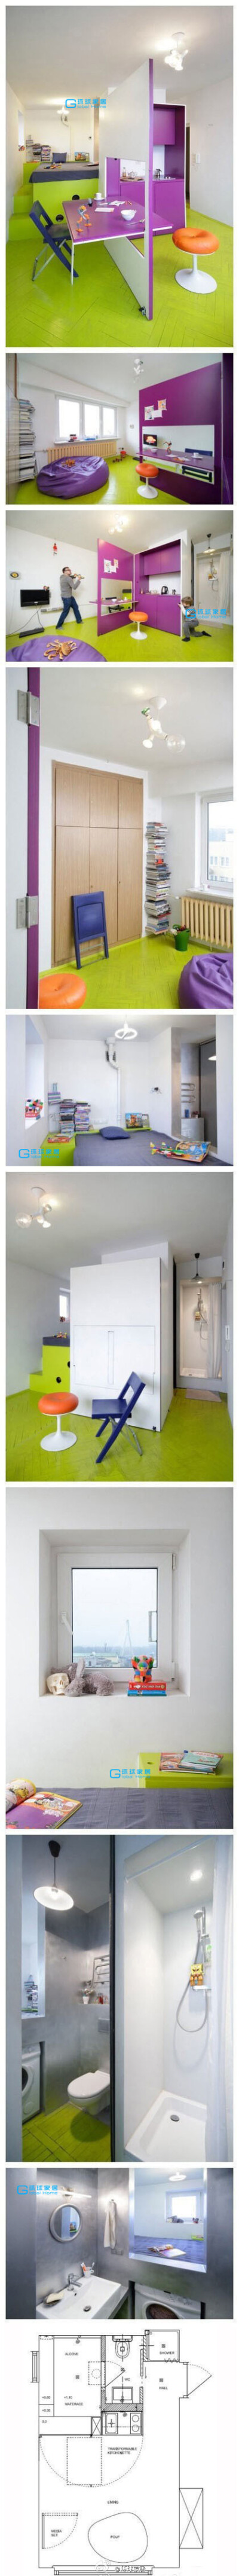 【21平米小公寓】~~这套公寓采用了几个非常有趣的空间节省方案，比如可转换的厨房和餐厅，洗衣机放在床下面~~